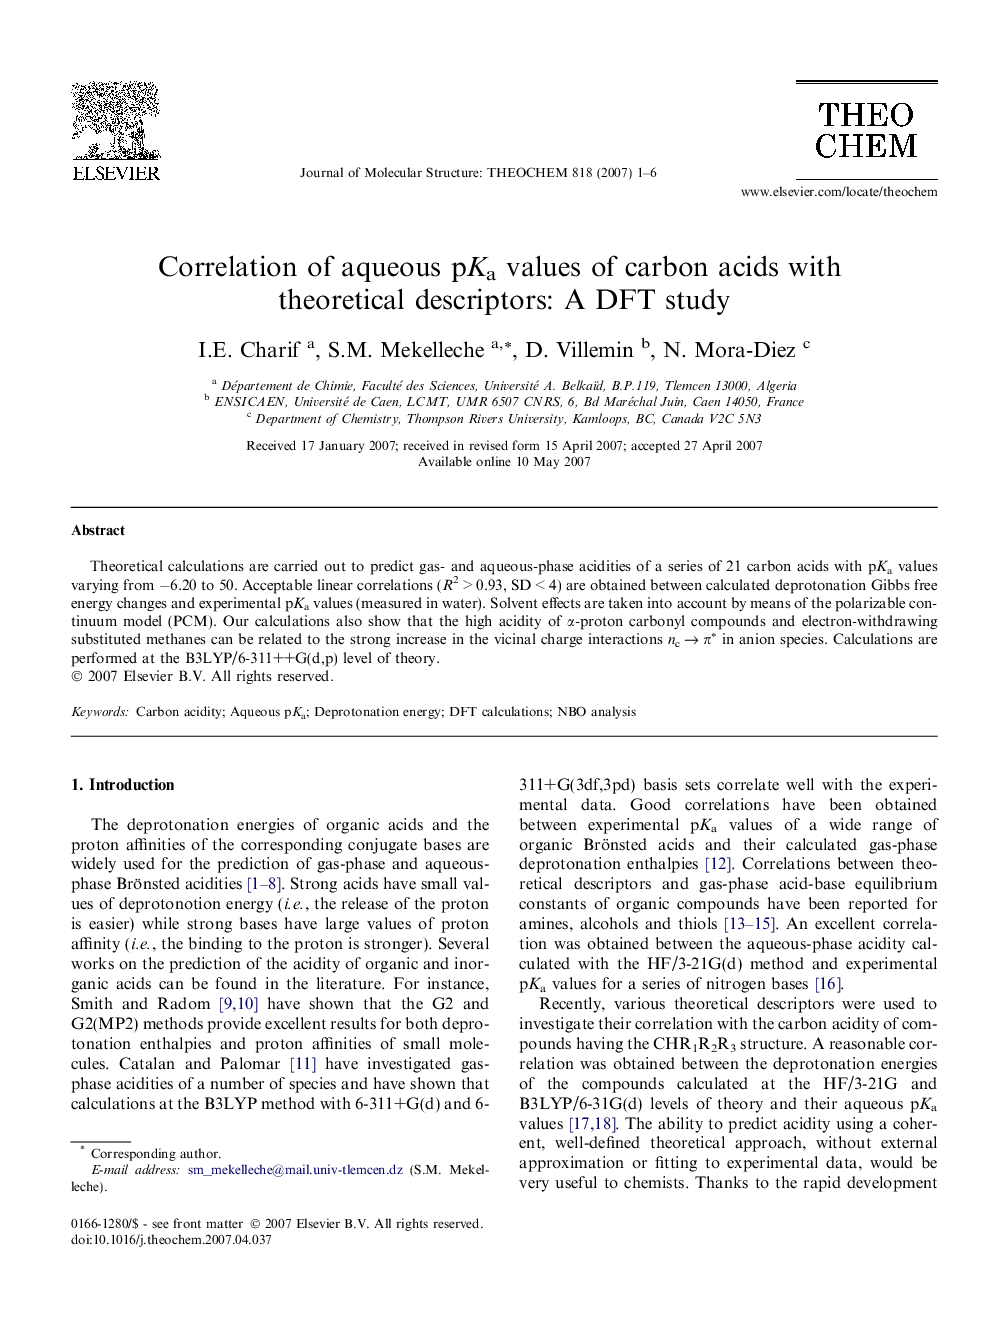 Correlation of aqueous pKa values of carbon acids with theoretical descriptors: A DFT study